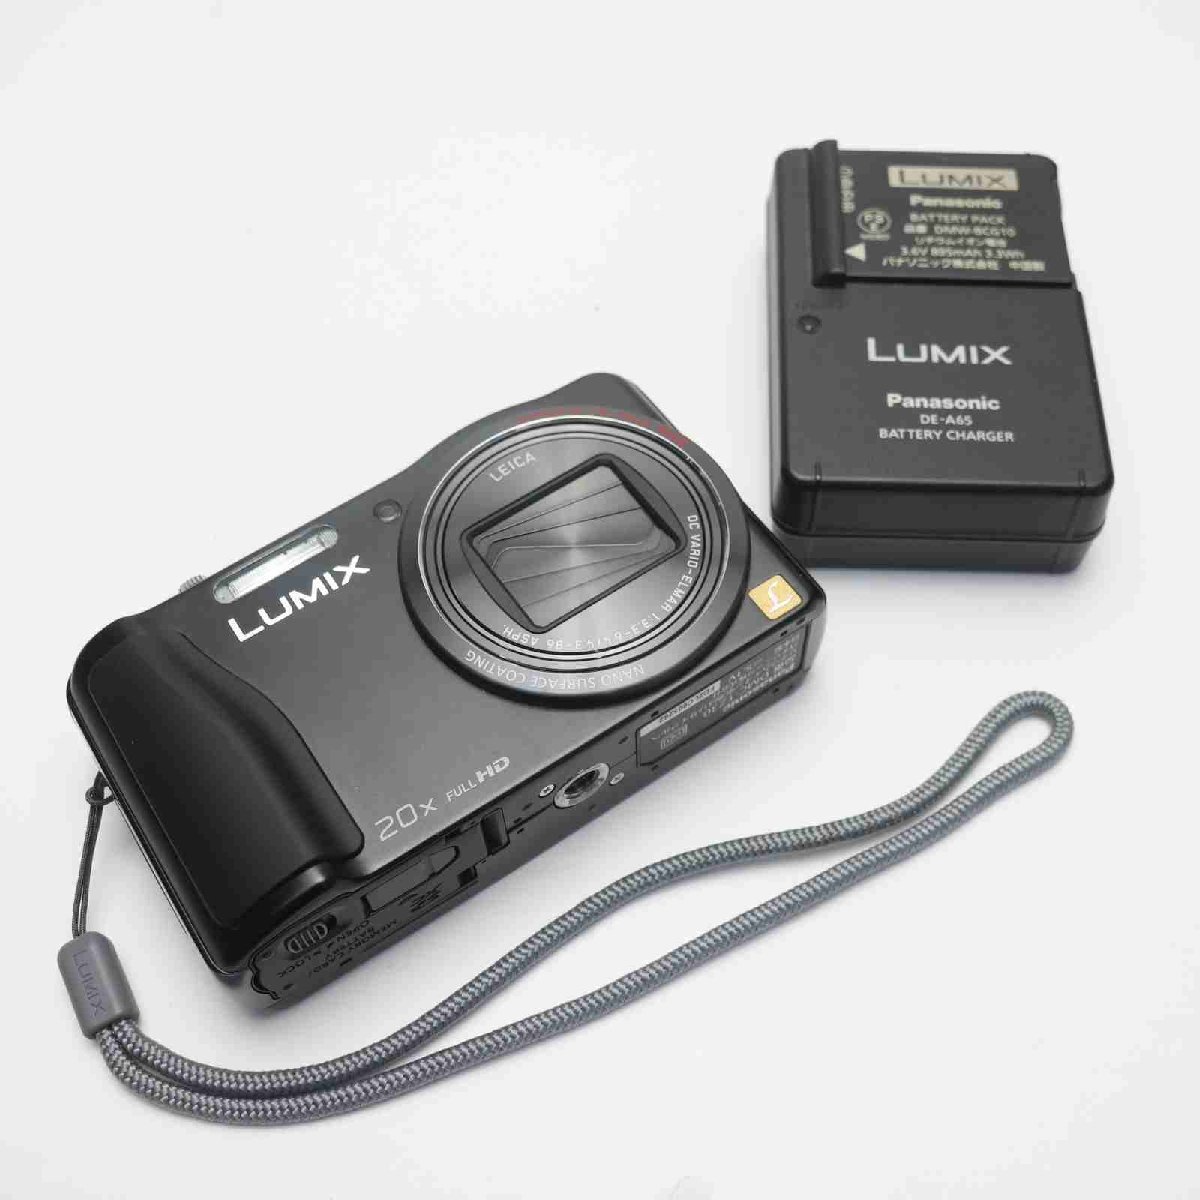 新品同様 DMC-TZ30 ブラック 即日発送 デジカメ Panasonic デジタルカメラ 本体 あすつく 土日祝発送OK